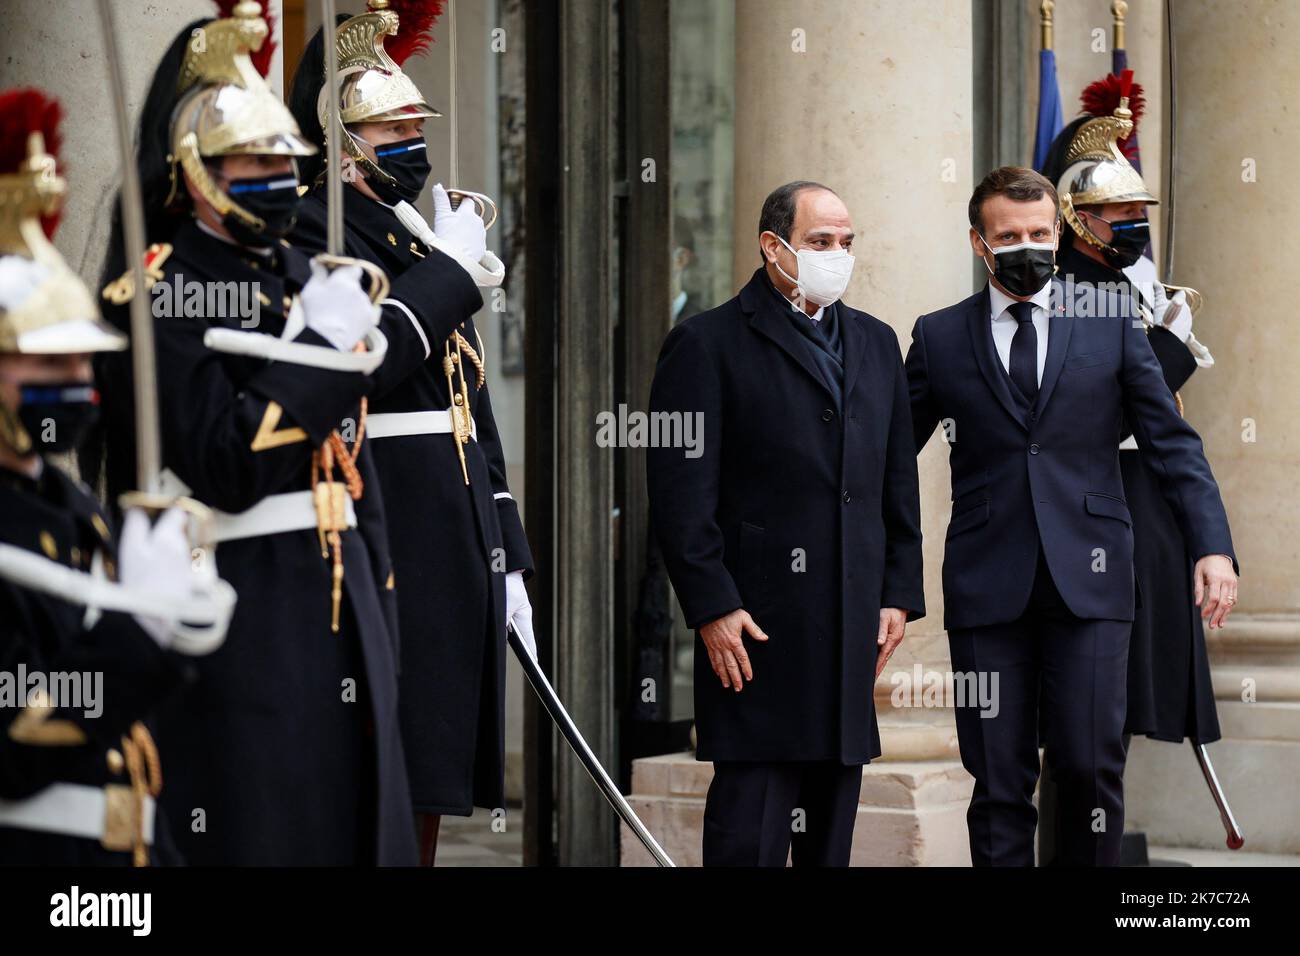 ©Thomas Padilla/MAXPPP - 07/12/2020 ; Paris, FRANCE ; LE PRESIDENT DE LA REPUBLIQUE, EMMANUEL MACRON RECOIT LE PRESIDENT DE LA REPUBLIQUE ARABE D' EGYPTE, ABDEL FATTAH AL SISSI AU PALAIS DE L' ELYSEE. French President Emmanuel Macron receives President of Egypt, Abdel Fattah Al-Sisi at the Elysee Palace in Paris, on December 07, 2020. Stock Photo